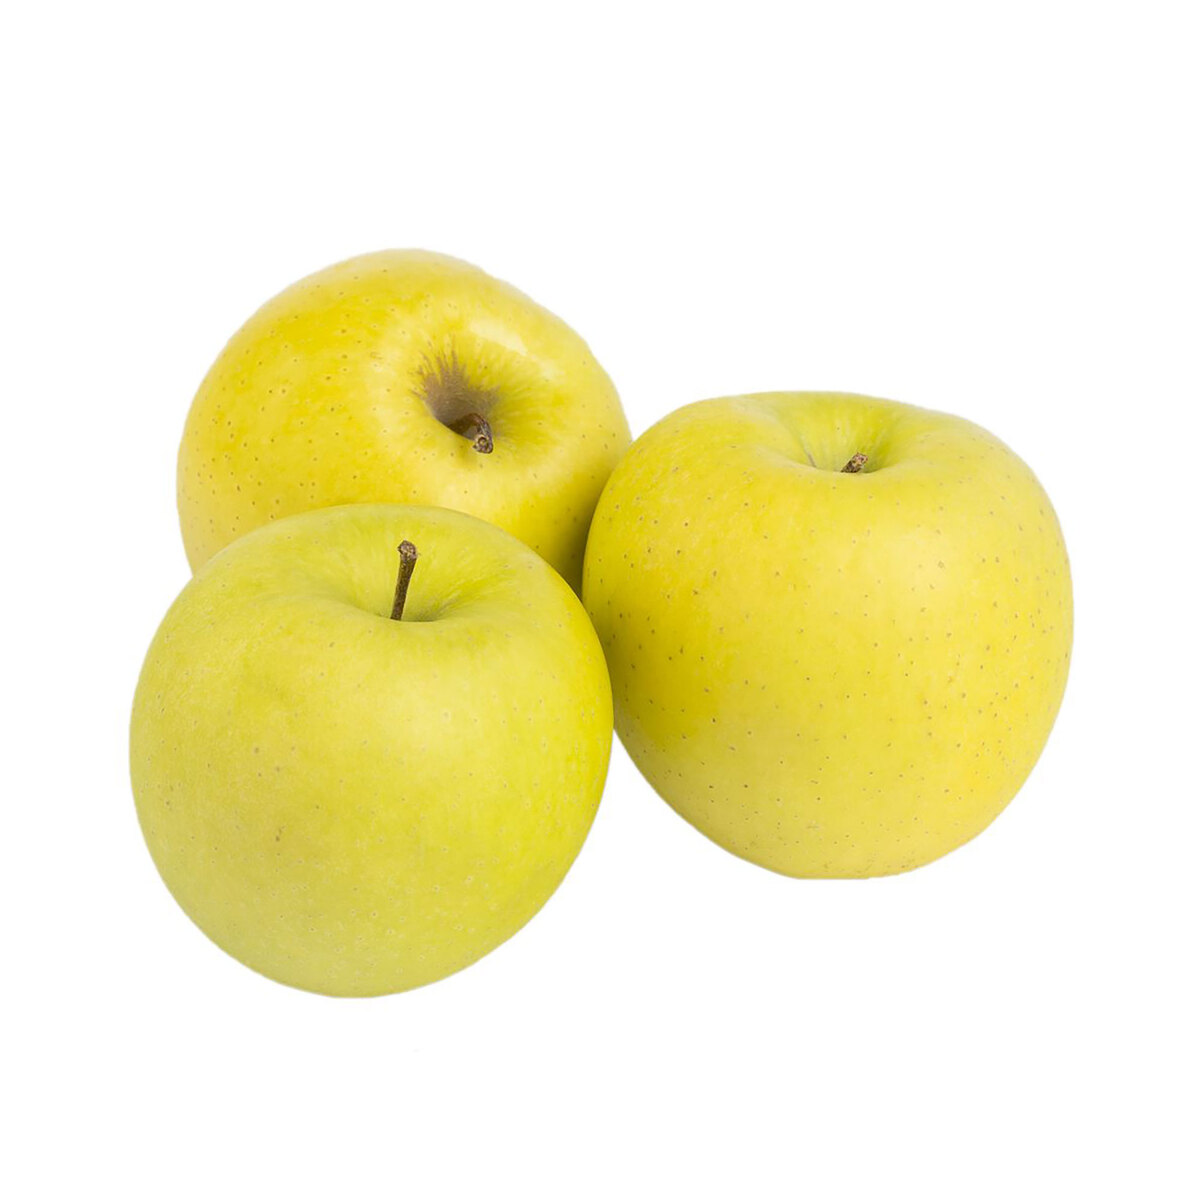 Buy Apple Golden Serbia 1 kg Online at Best Price | Apples | Lulu KSA in Saudi Arabia